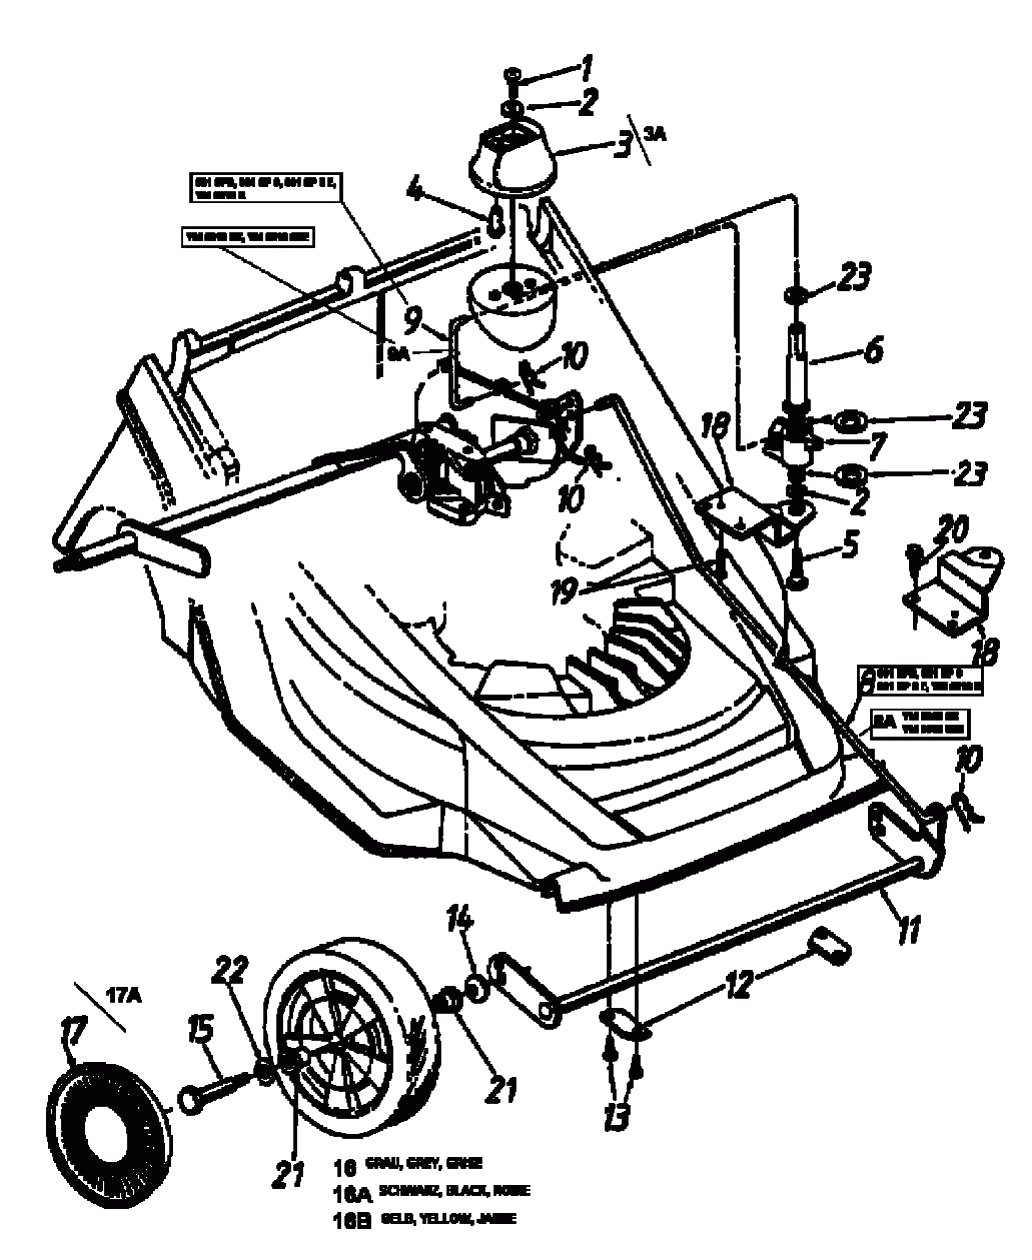 MTD Артикул 12A-649Y678 (год выпуска 1999). Передние колеса, регулятор высоты реза